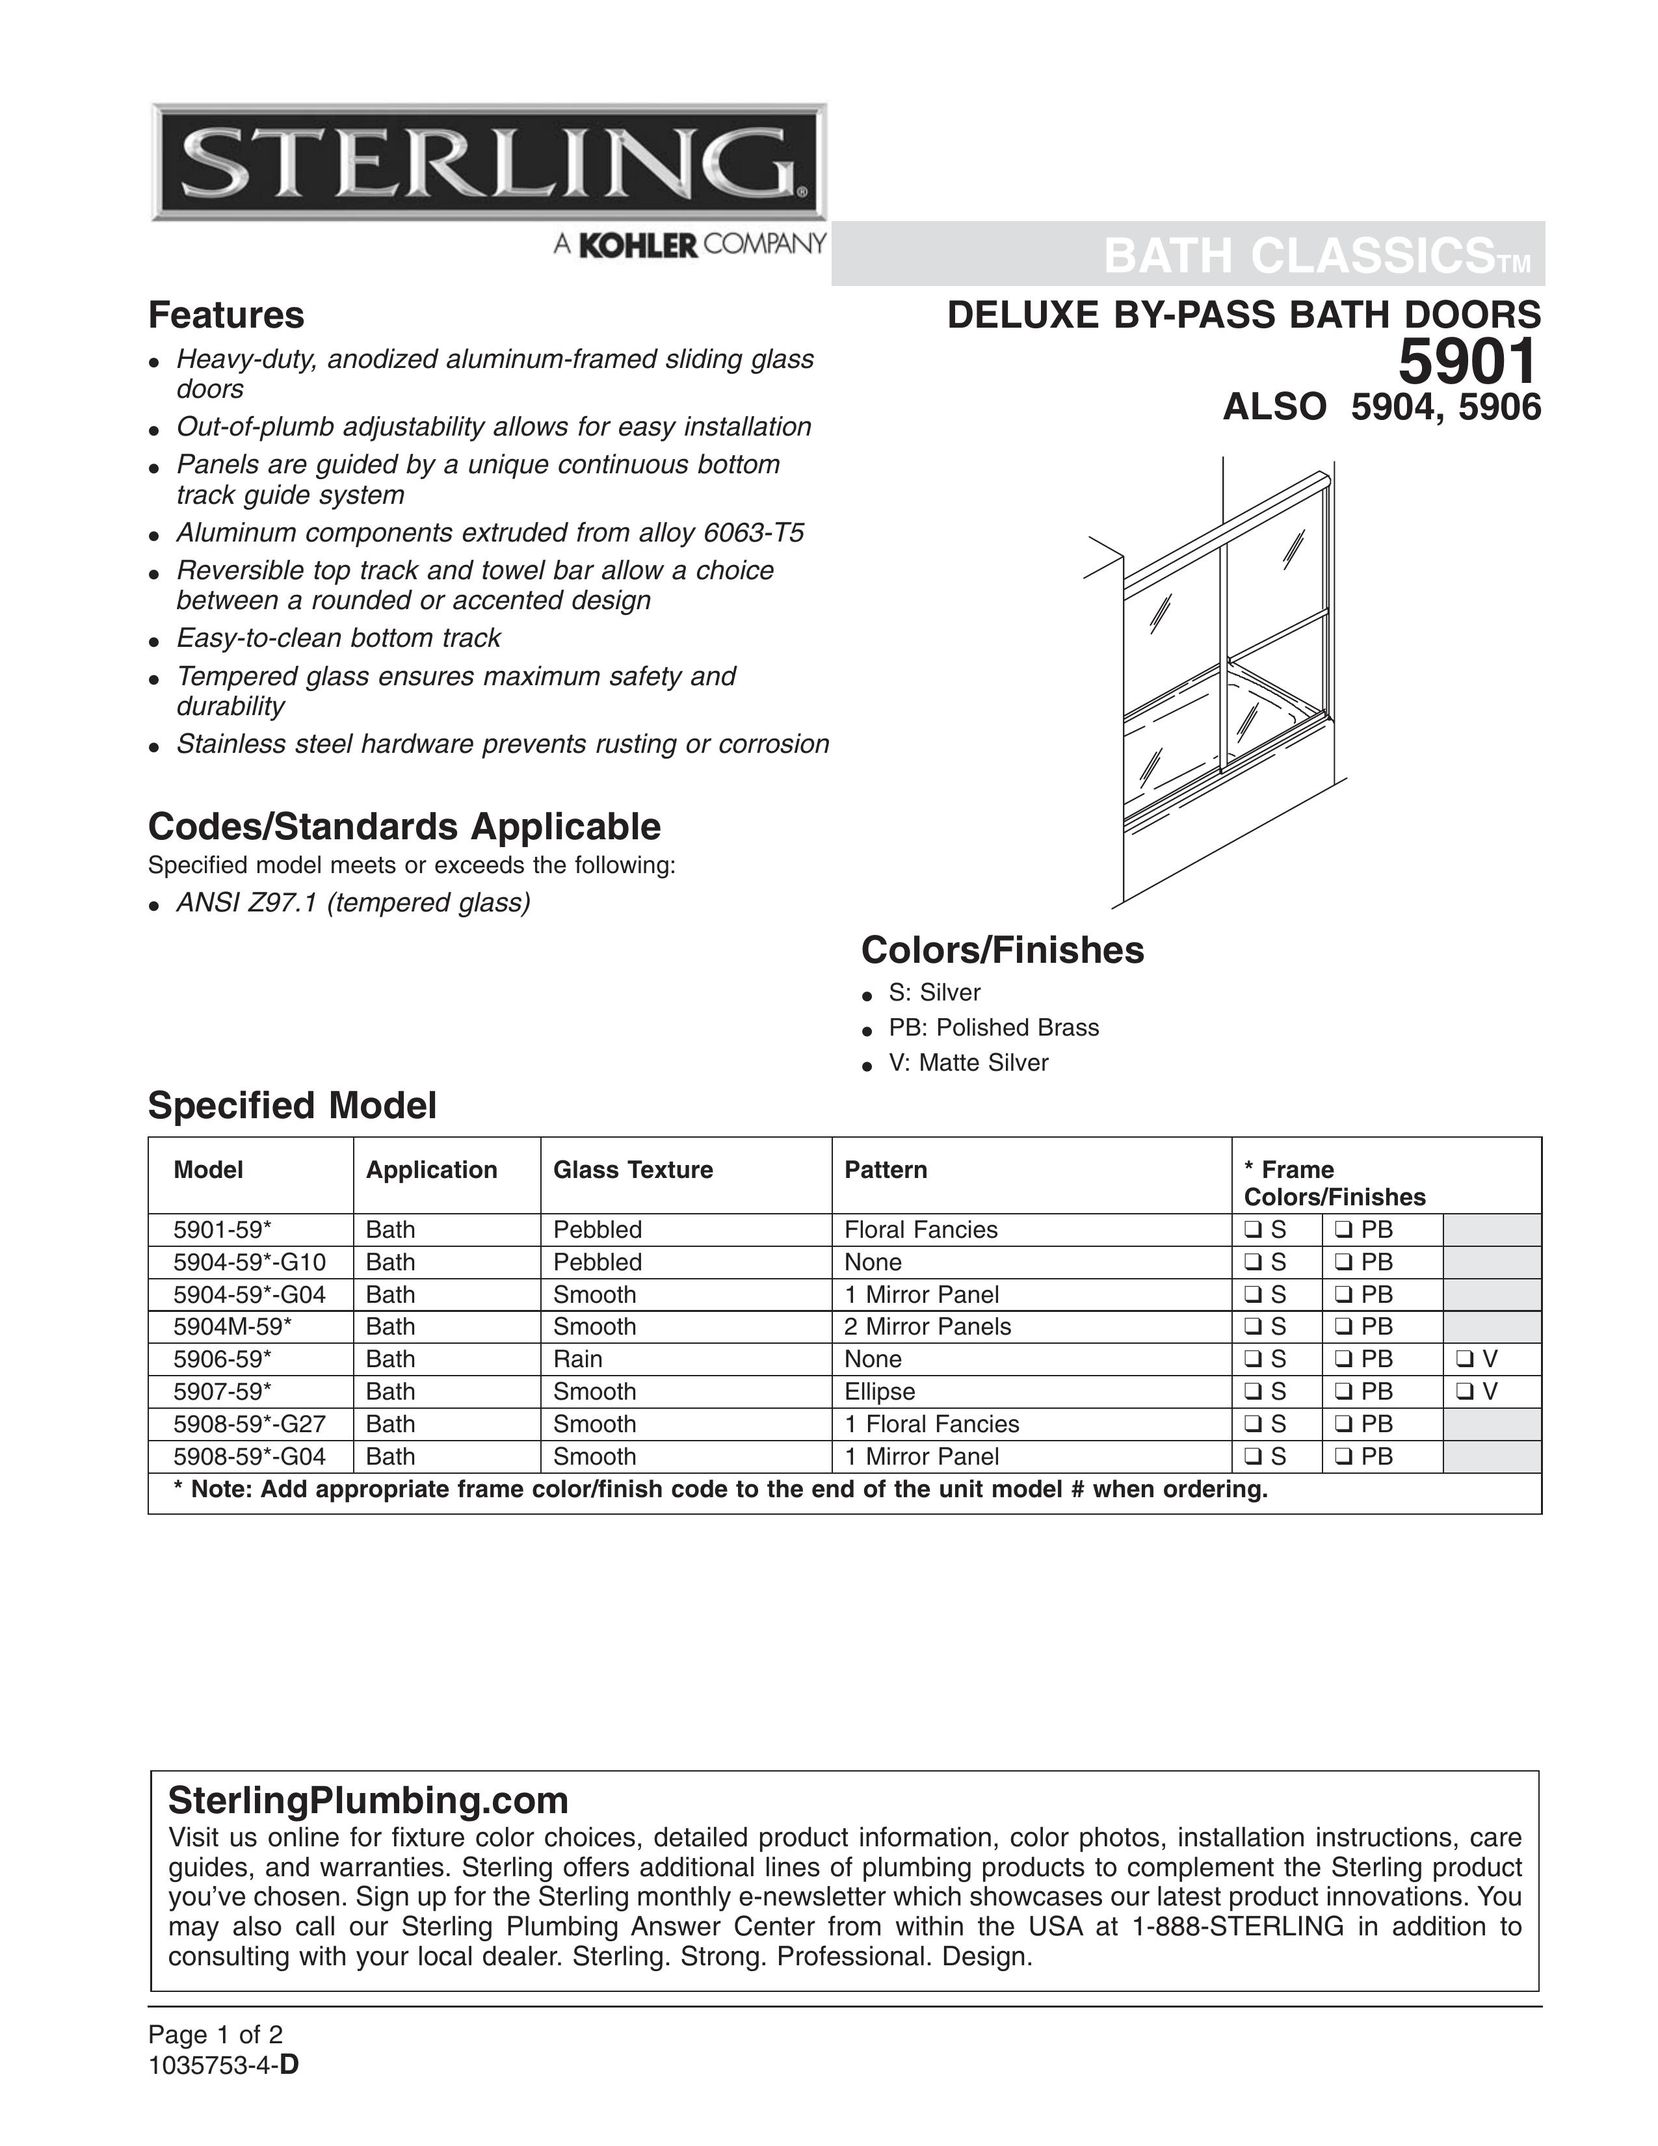 Sterling Plumbing 5904-59*-G10 Door User Manual